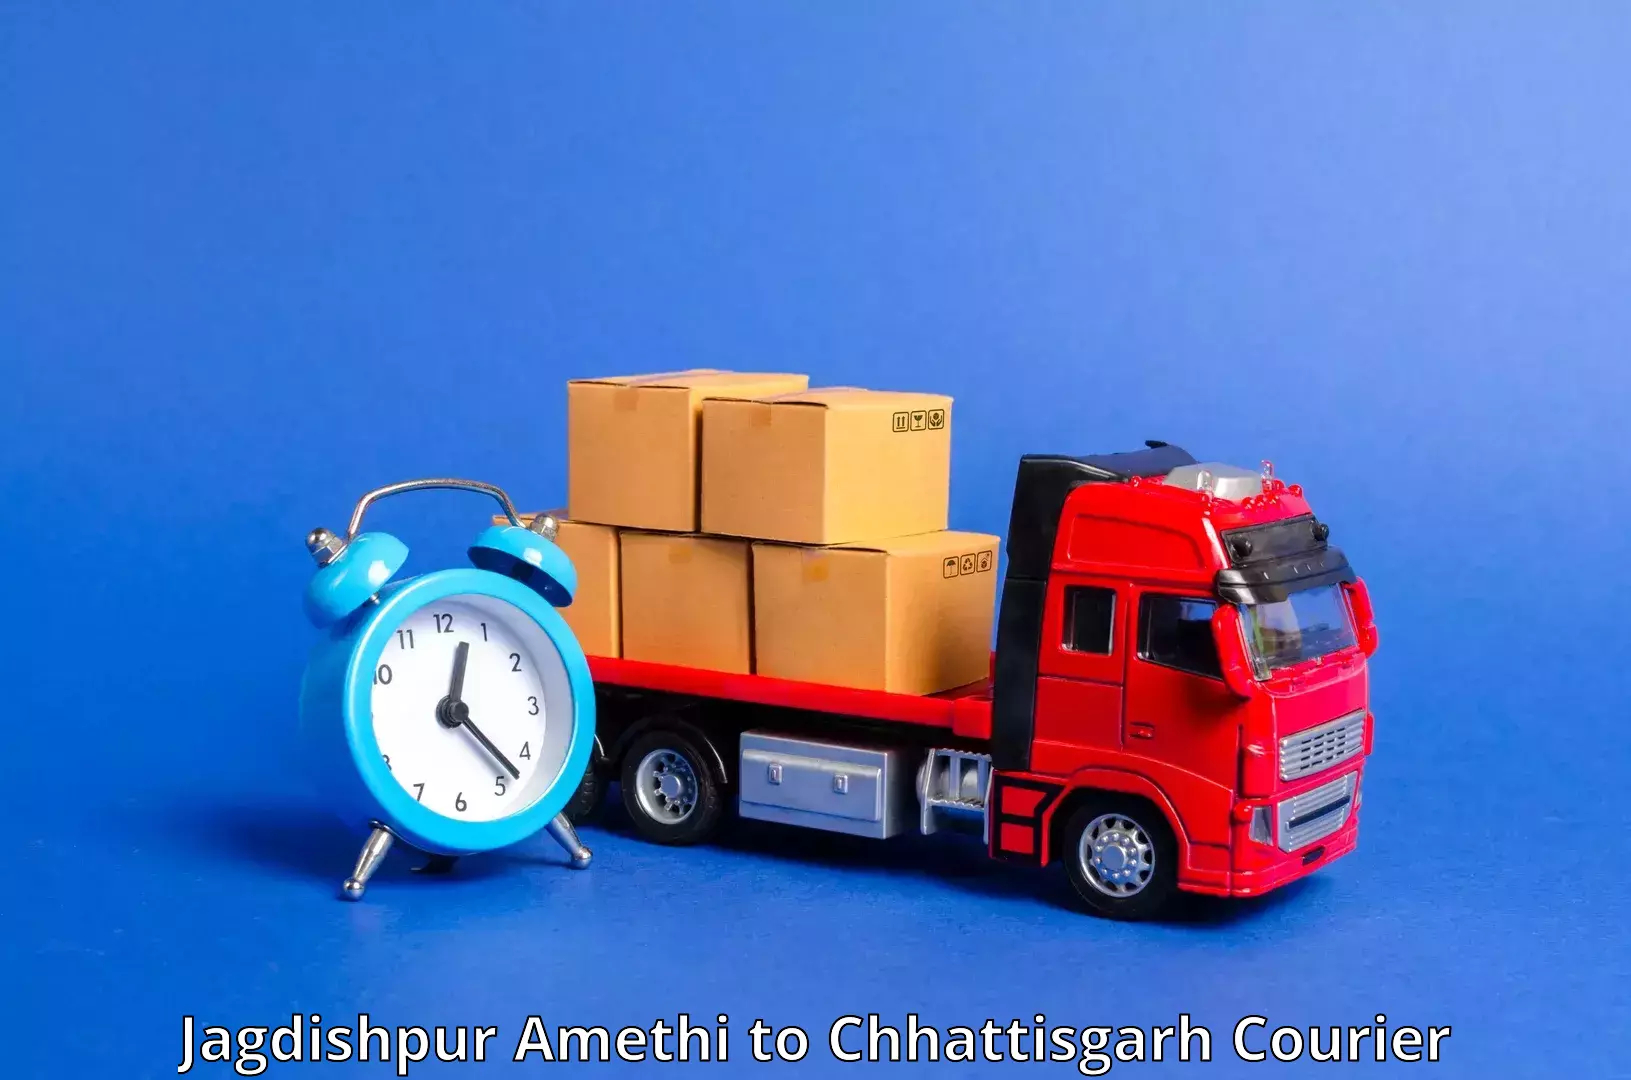 Smart logistics strategies Jagdishpur Amethi to Jagdalpur